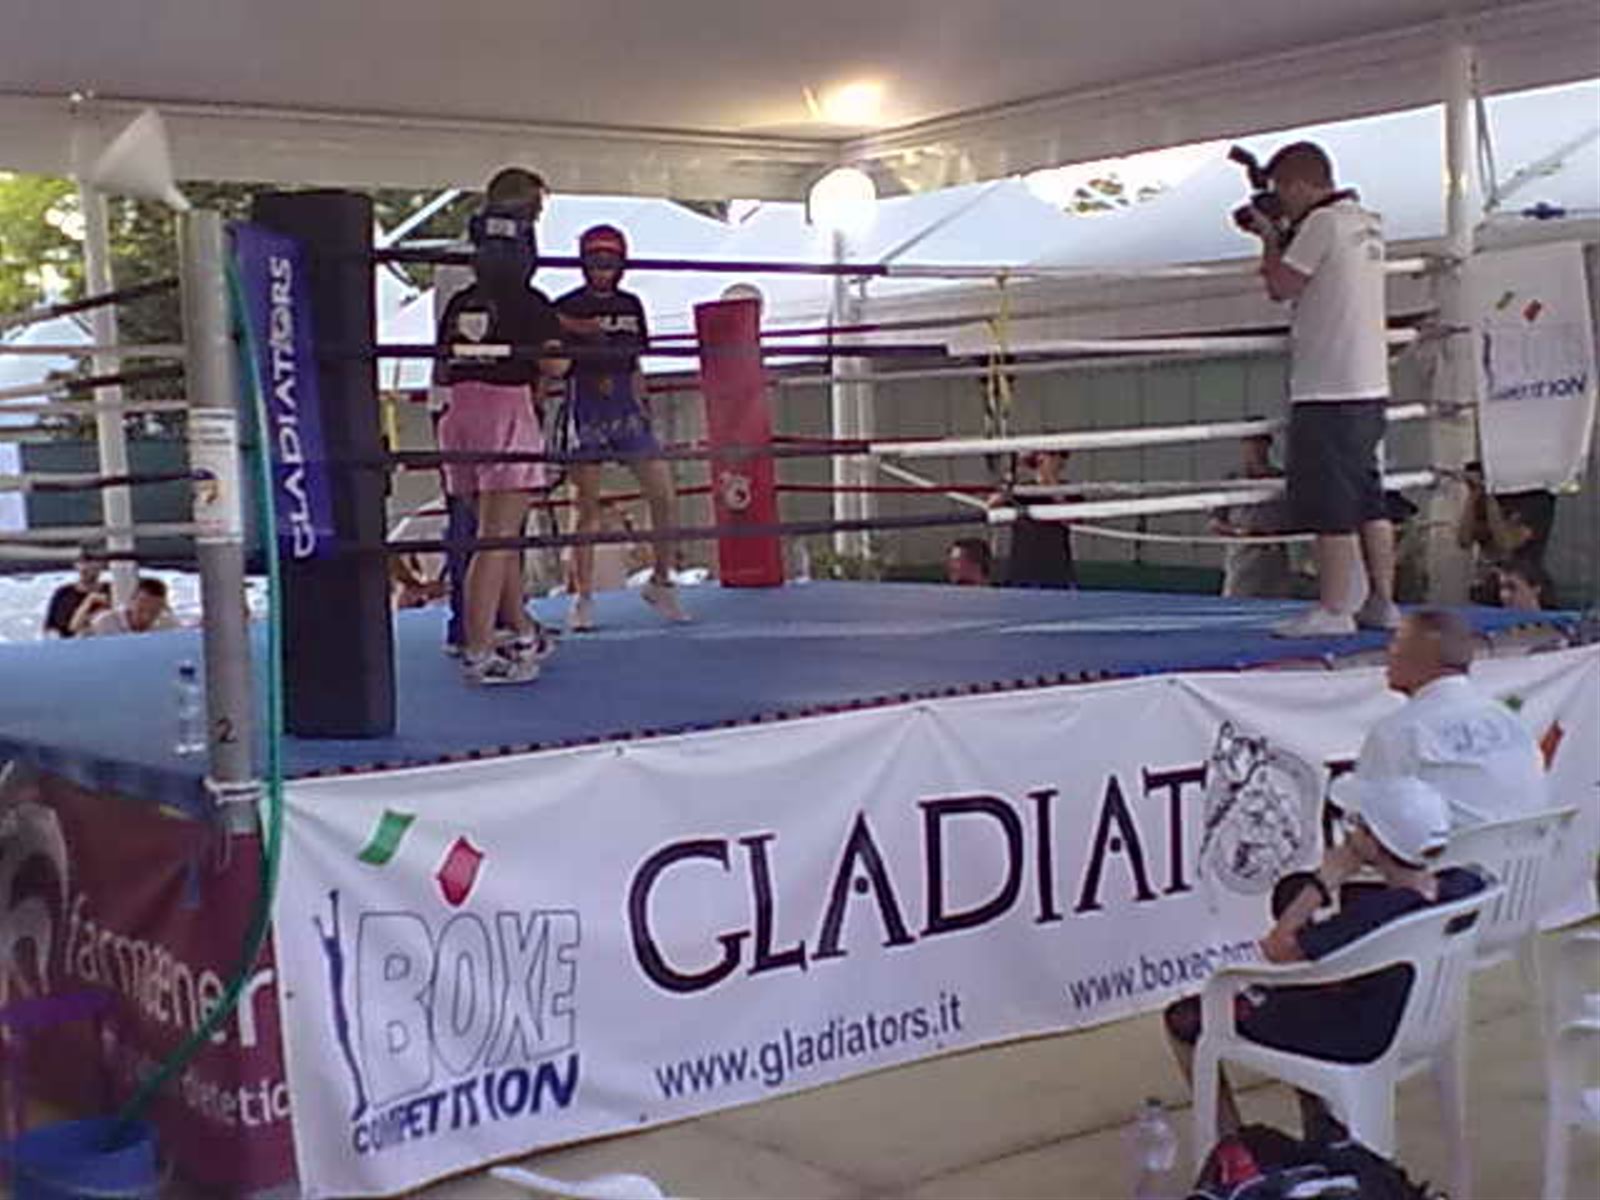 Boxe Competition: Grande Successo per la Gladiators Cup a MondoFitness